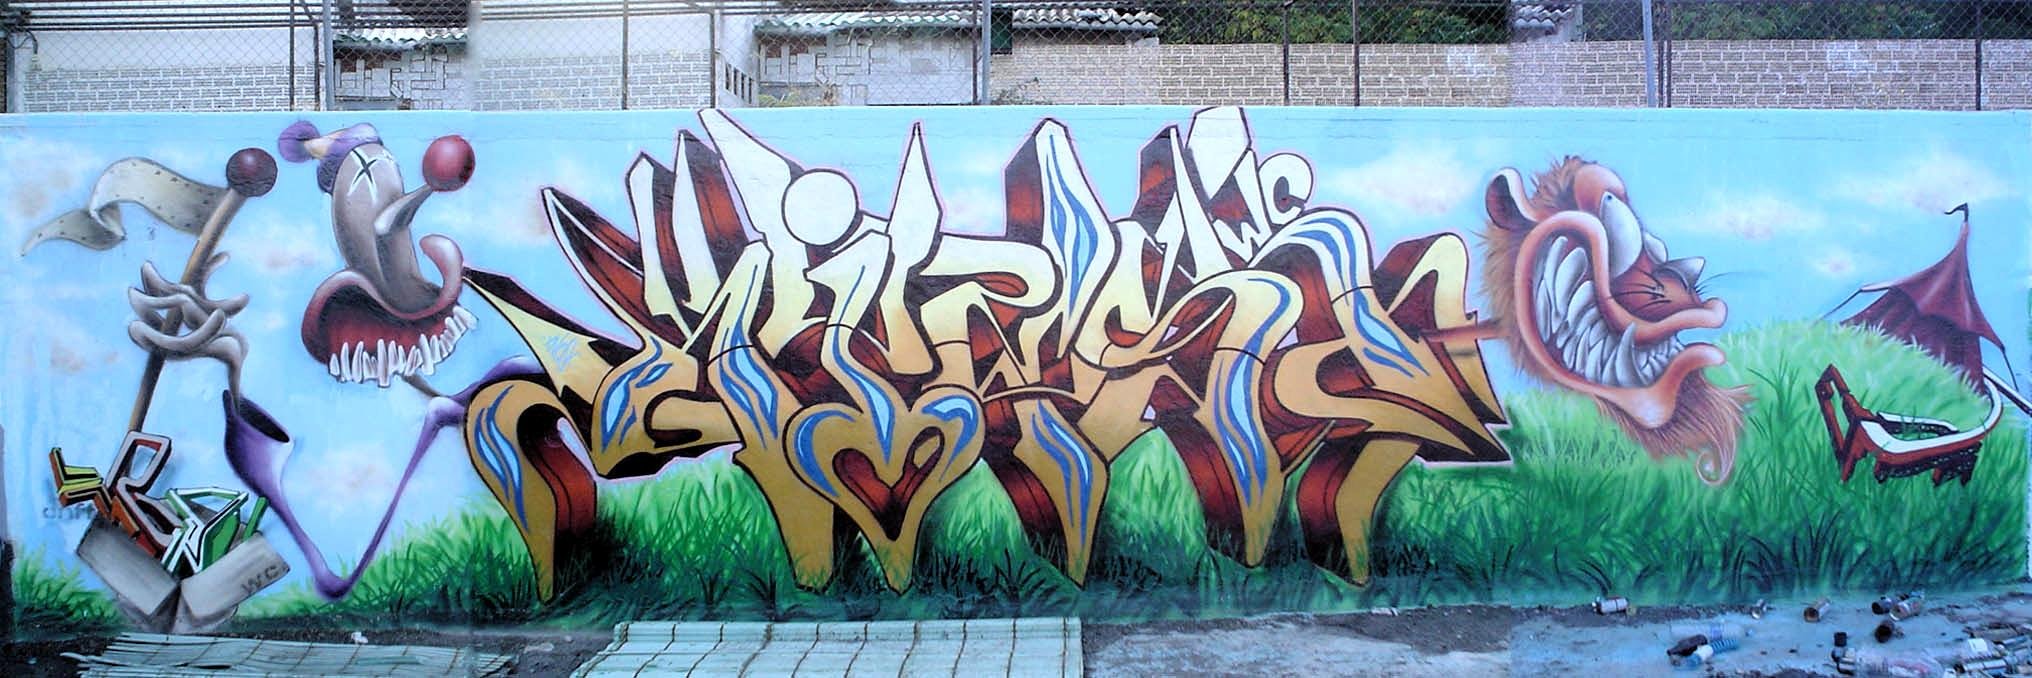 Рисунки в виде граффити